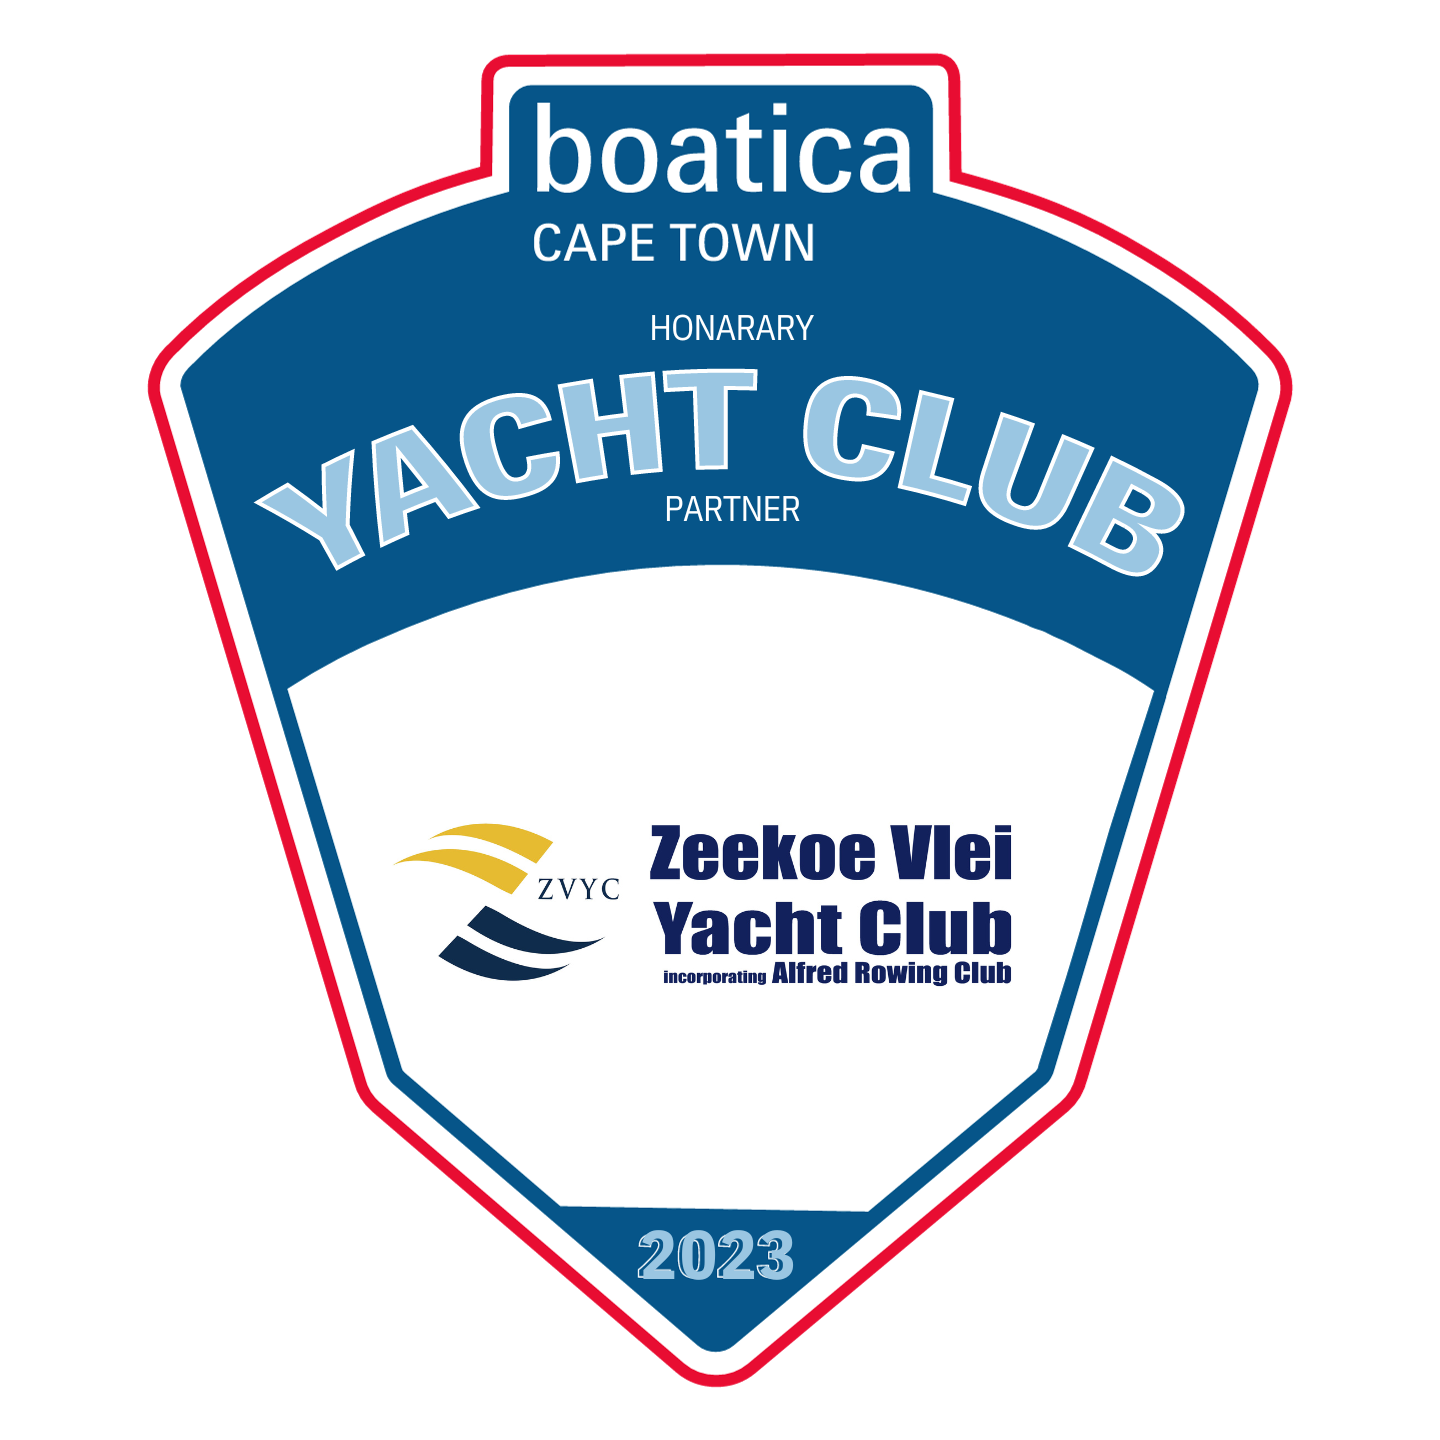 Zeekoei Vlei boatica honorary yacht club partner logo.pdf - 7